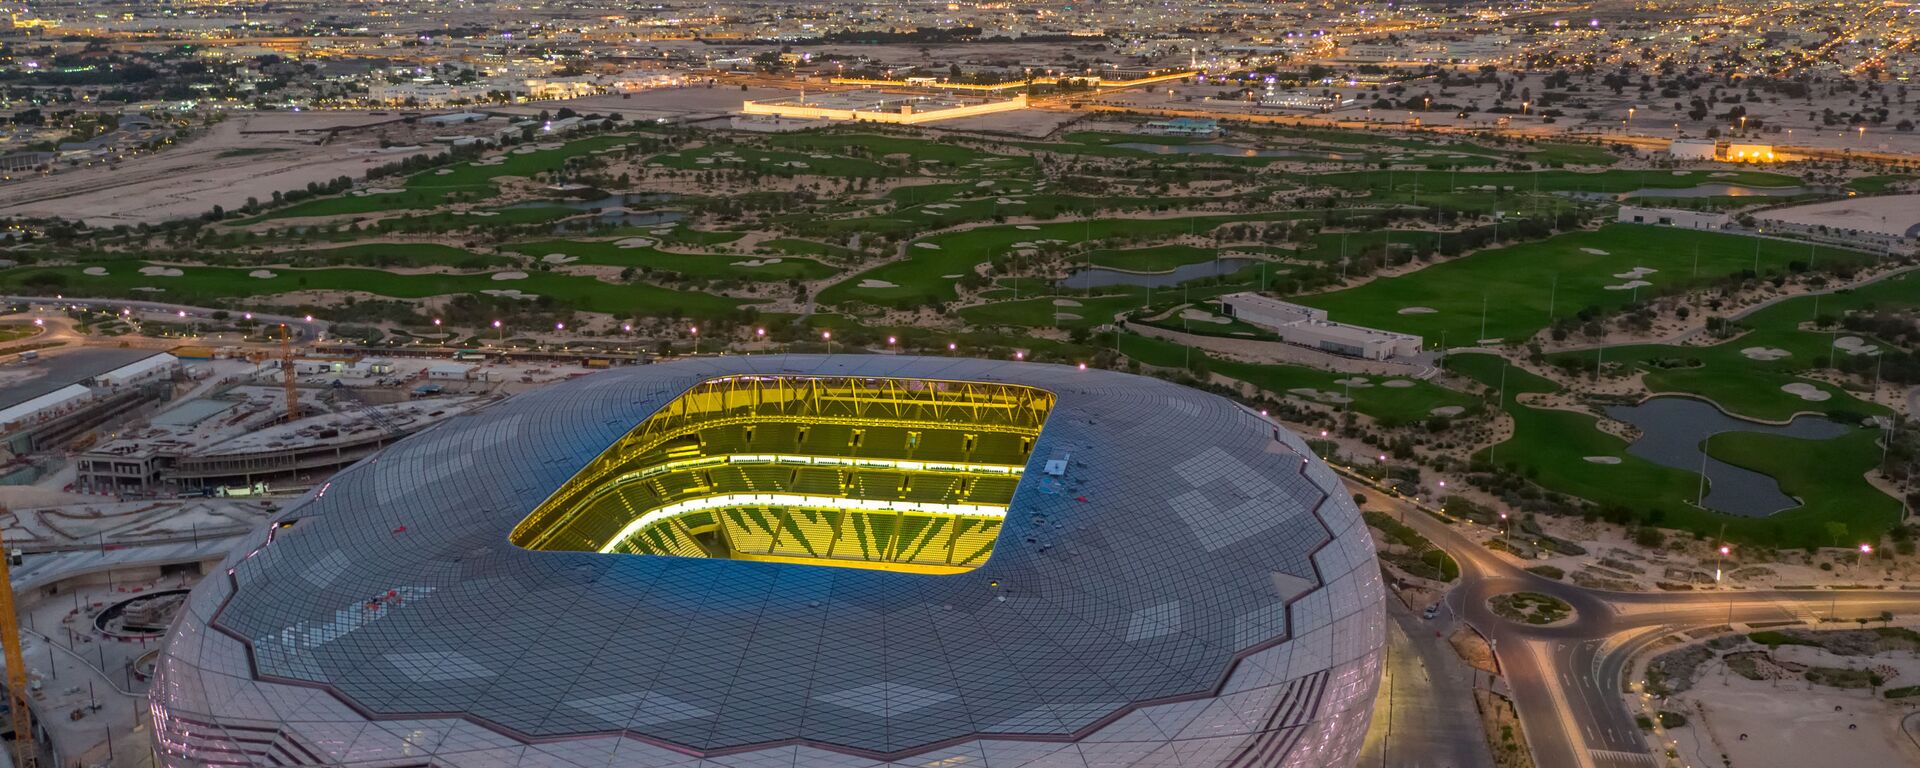 ملعب المدينة التعليمية، ضمن ملاعب كأس العالم في قطر 2022 بسعة 40 ألف متفرج - سبوتنيك عربي, 1920, 26.03.2022